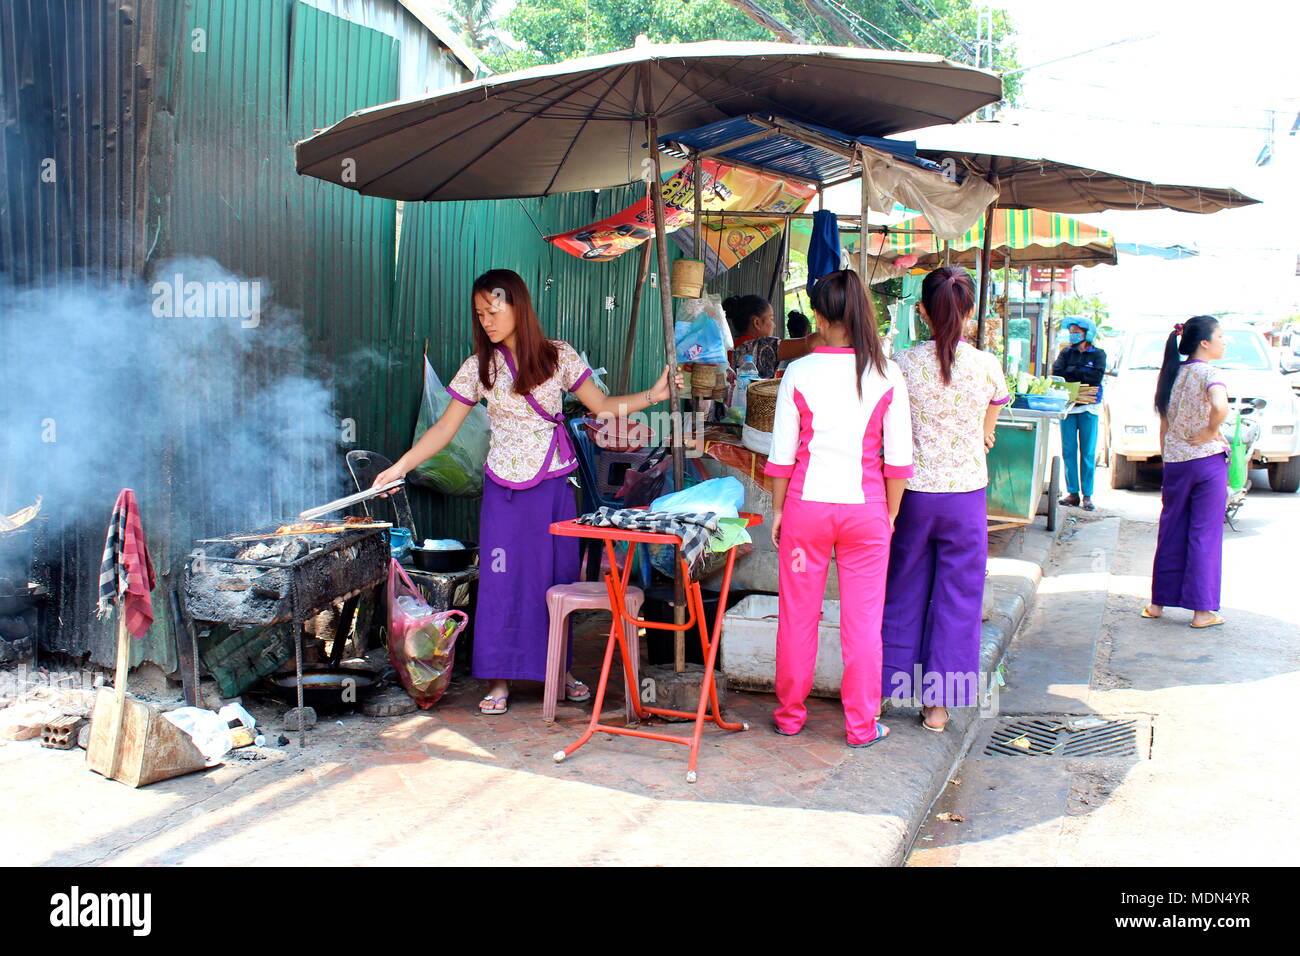 À l'heure du déjeuner le long des stands de restauration Souphannouvong Avenue, Vientiane, Laos, 2016. Banque D'Images